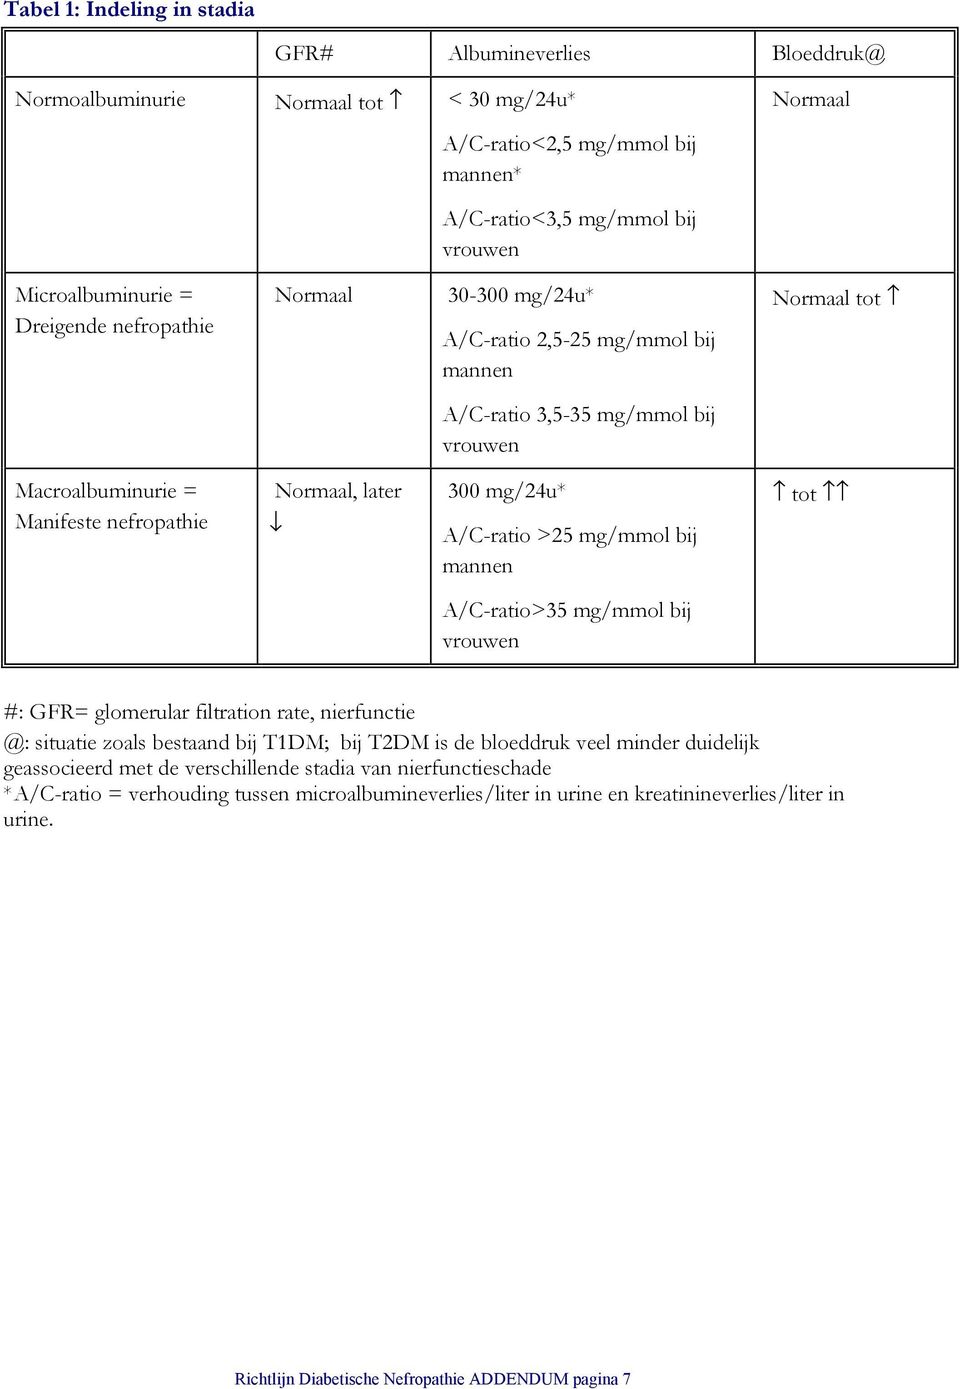 A/C-ratio >25 mg/mmol bij mannen tot A/C-ratio>35 mg/mmol bij vrouwen #: GFR= glomerular filtration rate, nierfunctie @: situatie zoals bestaand bij T1DM; bij T2DM is de bloeddruk veel minder